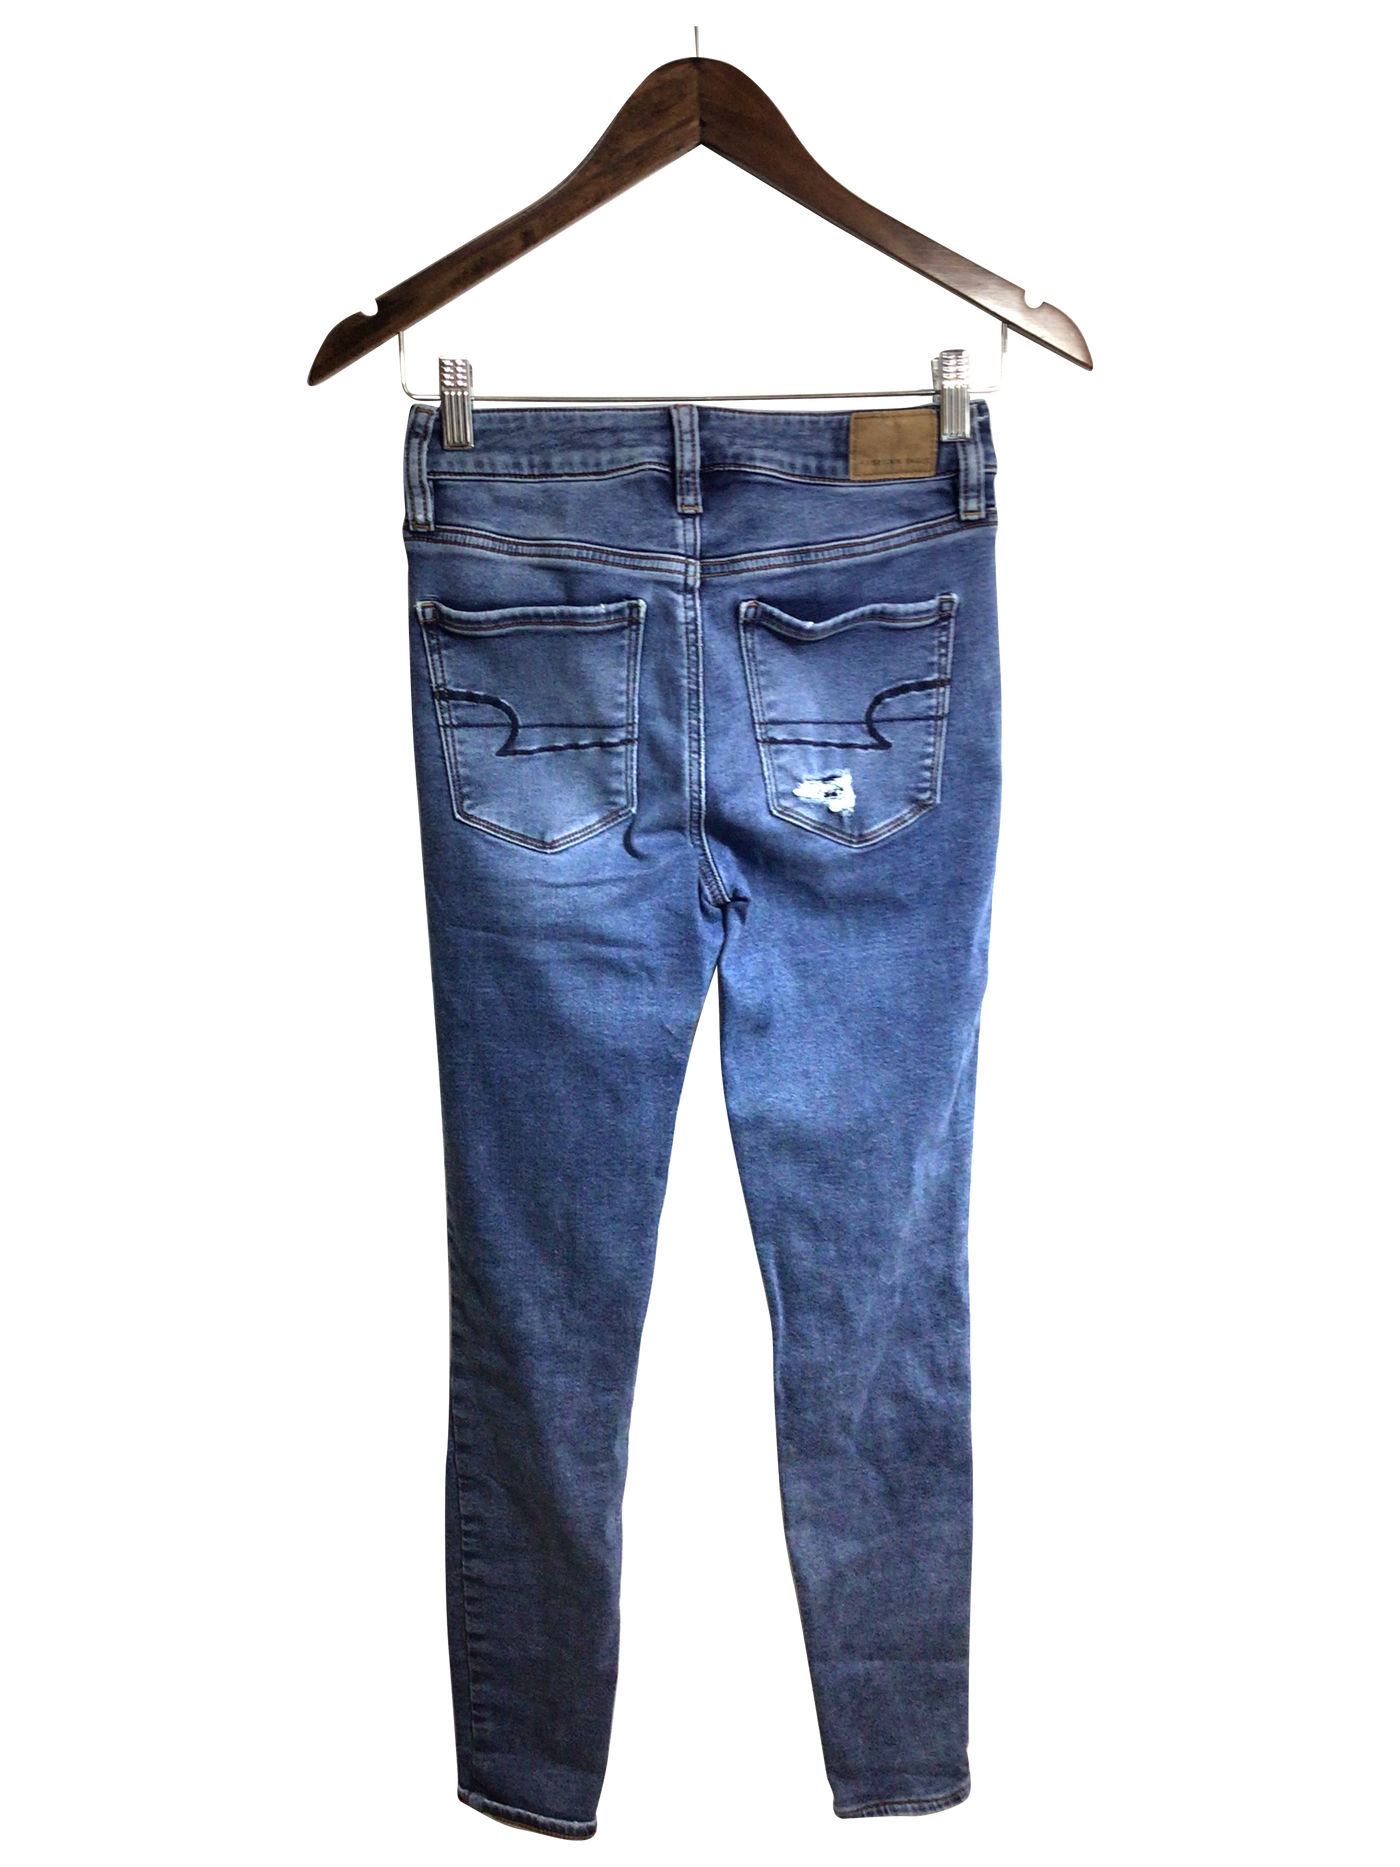 AMERICAN EAGLE Women Straight-Legged Jeans Regular fit in Blue - Size 4 | 12.9 $ KOOP